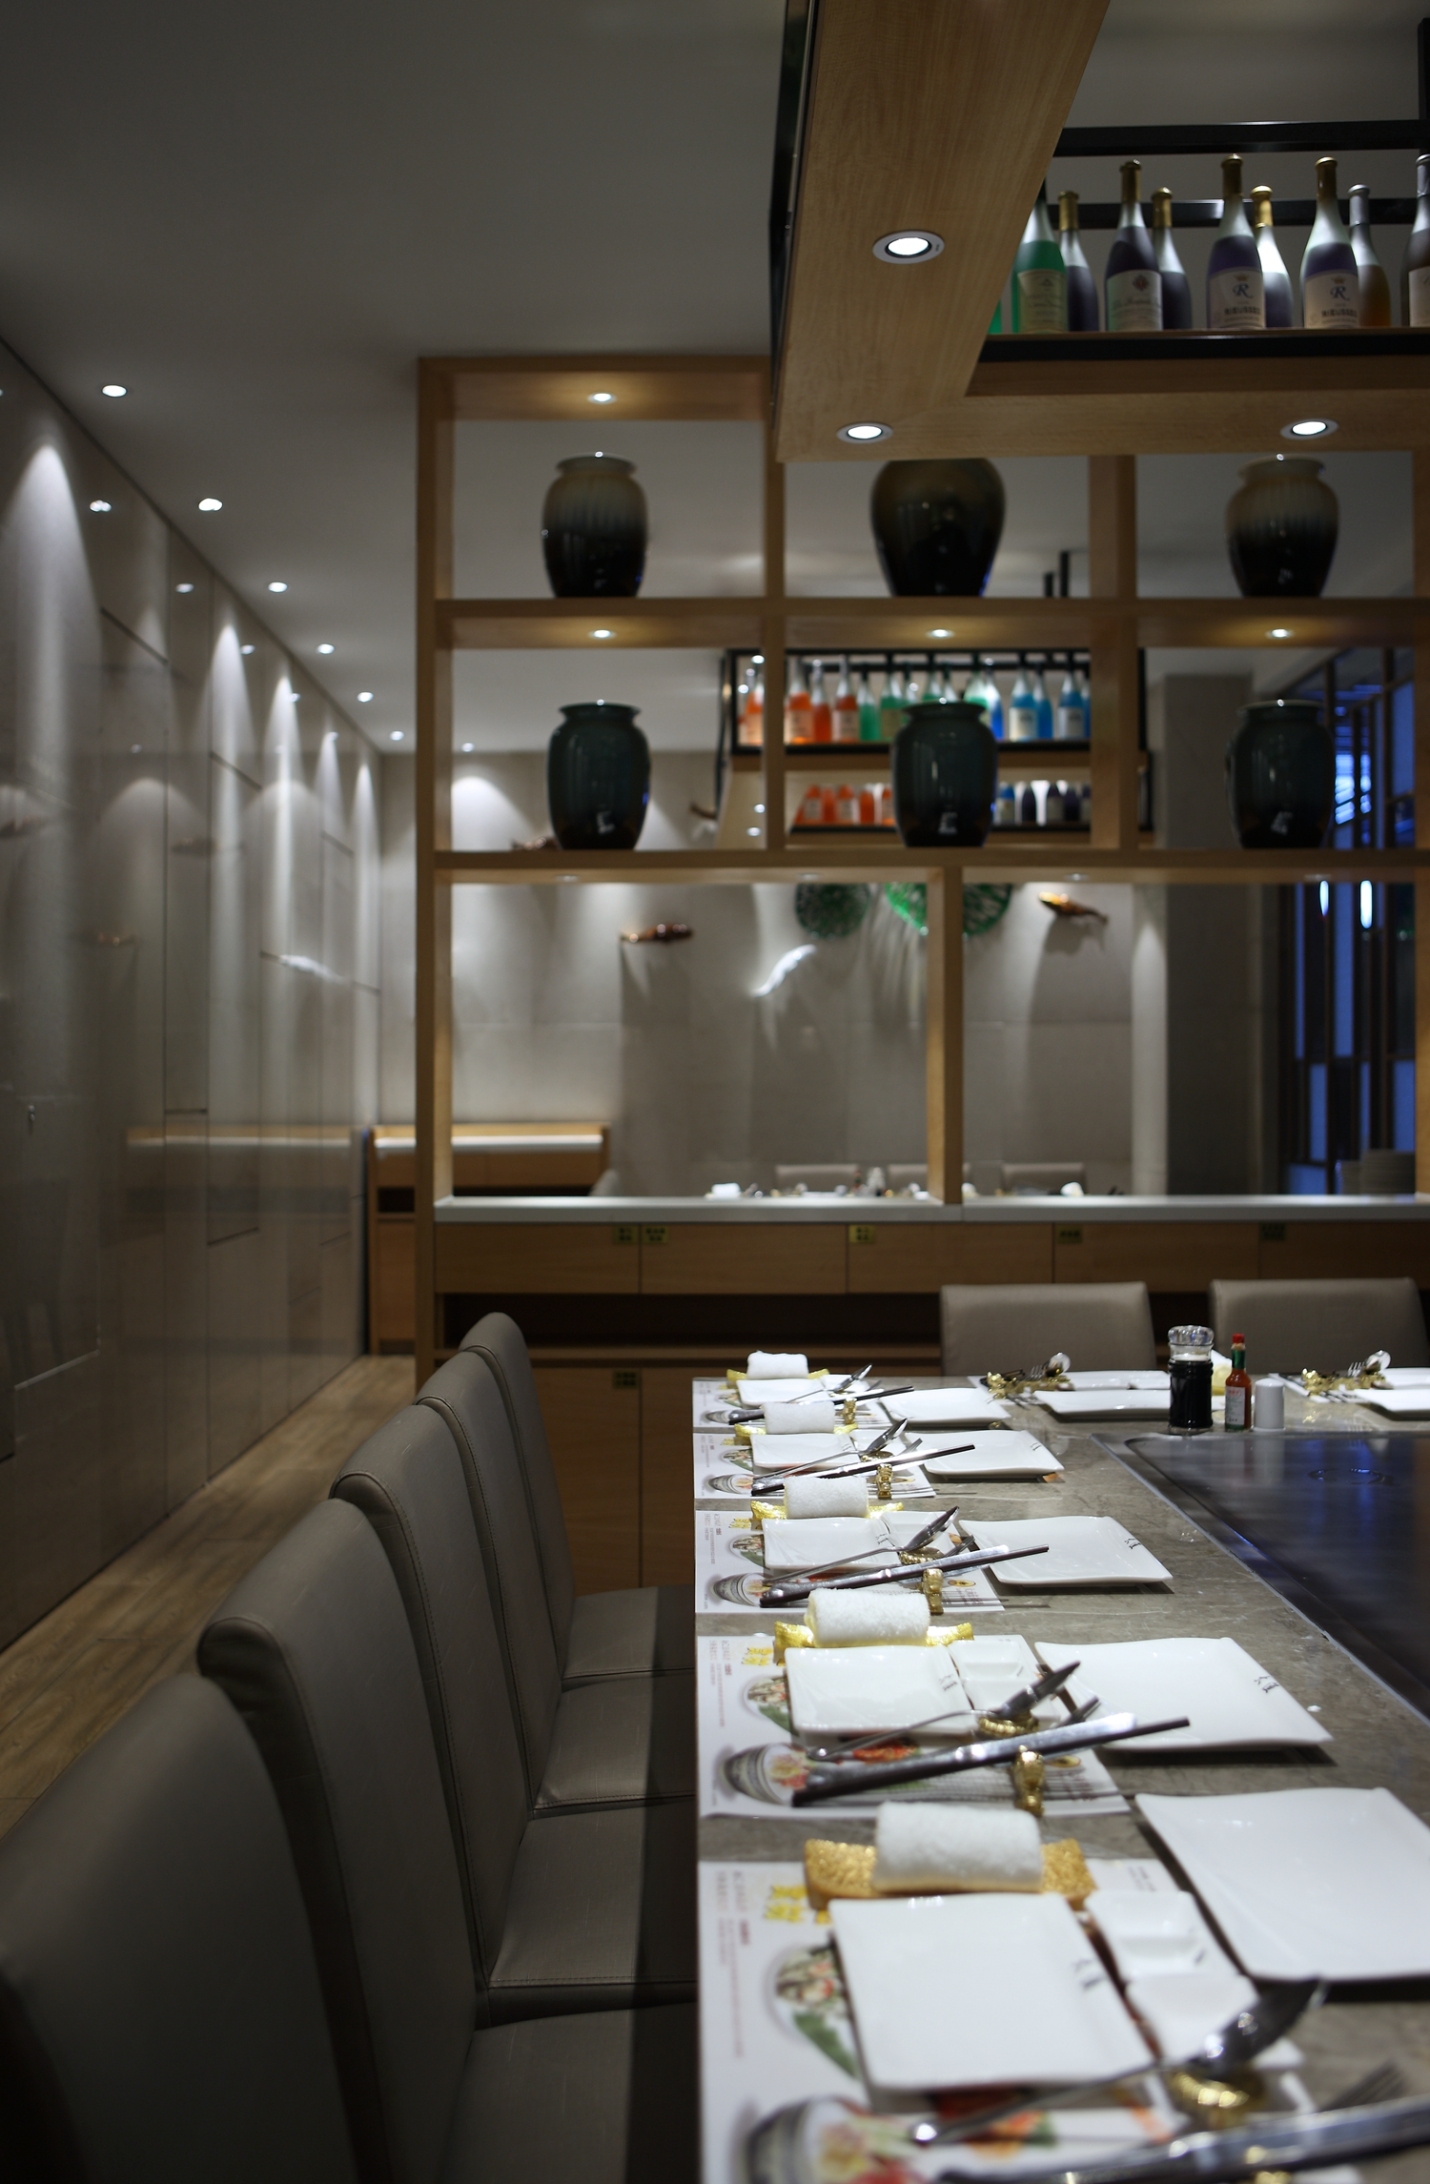 401㎡日式铁板烧空间 品牌餐厅设计“大渔铁板烧”的前身